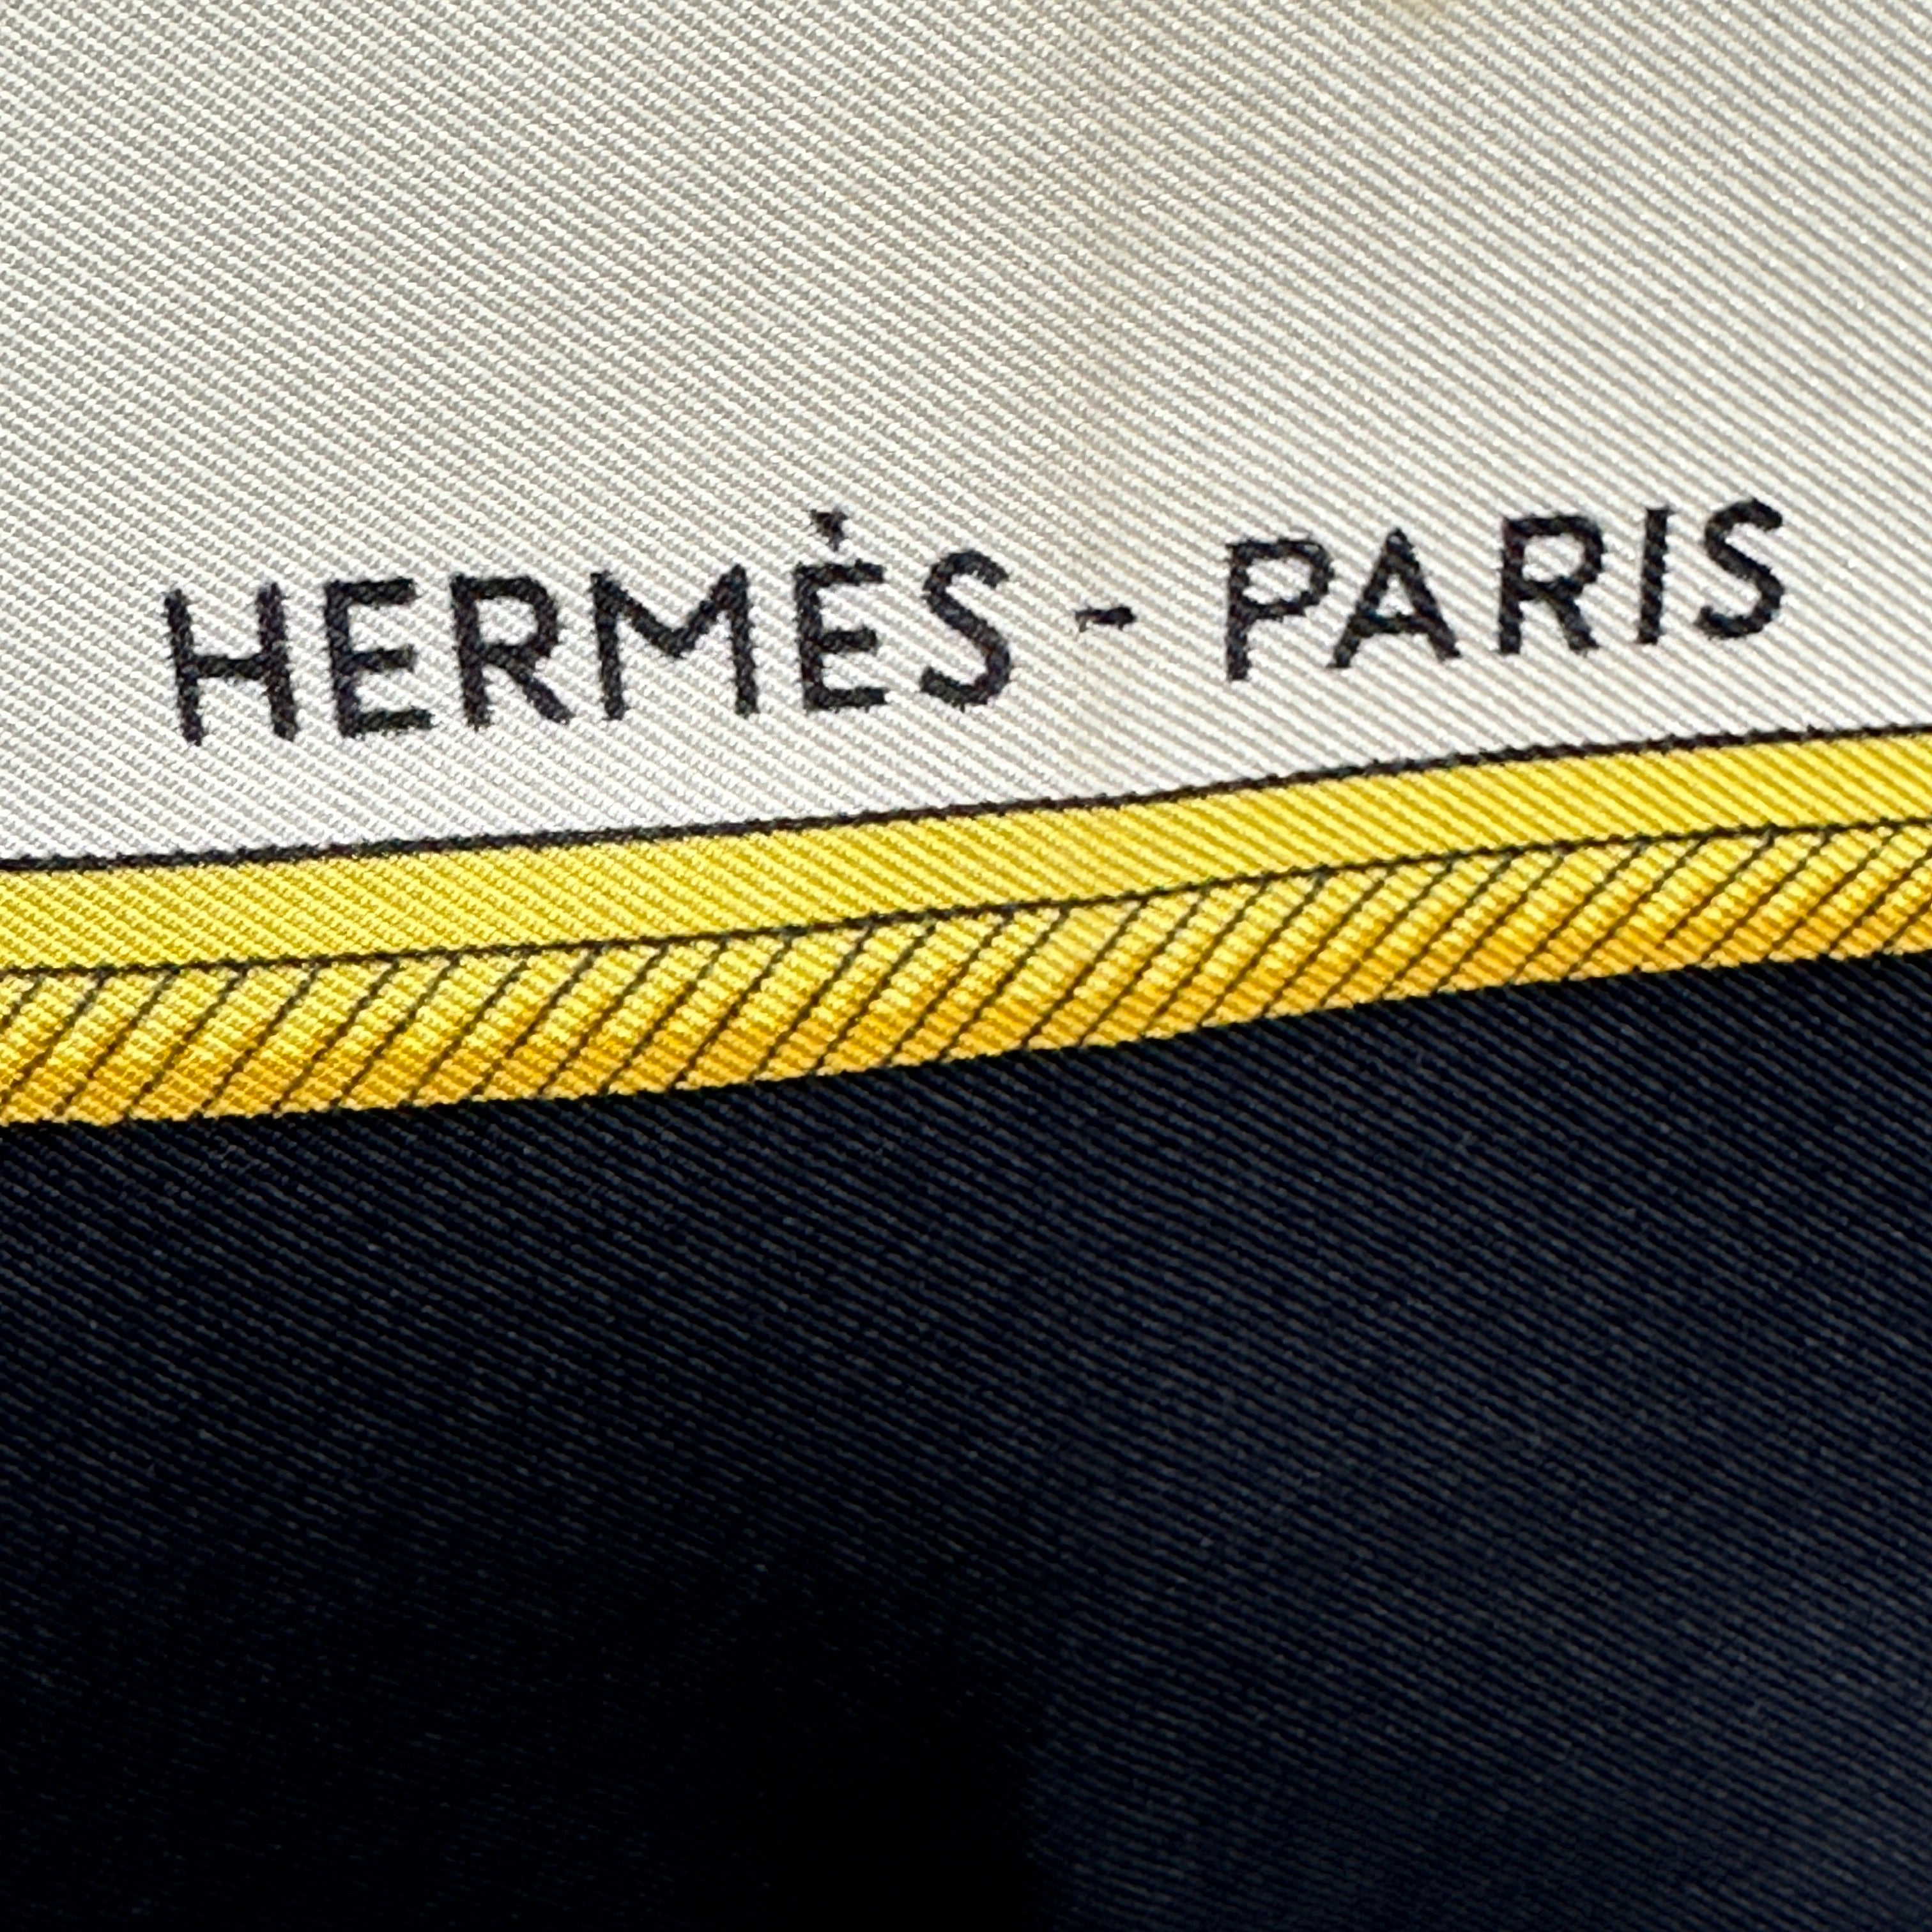 signature-hermes-paris-foulard-hermes-voitures-a-transformation